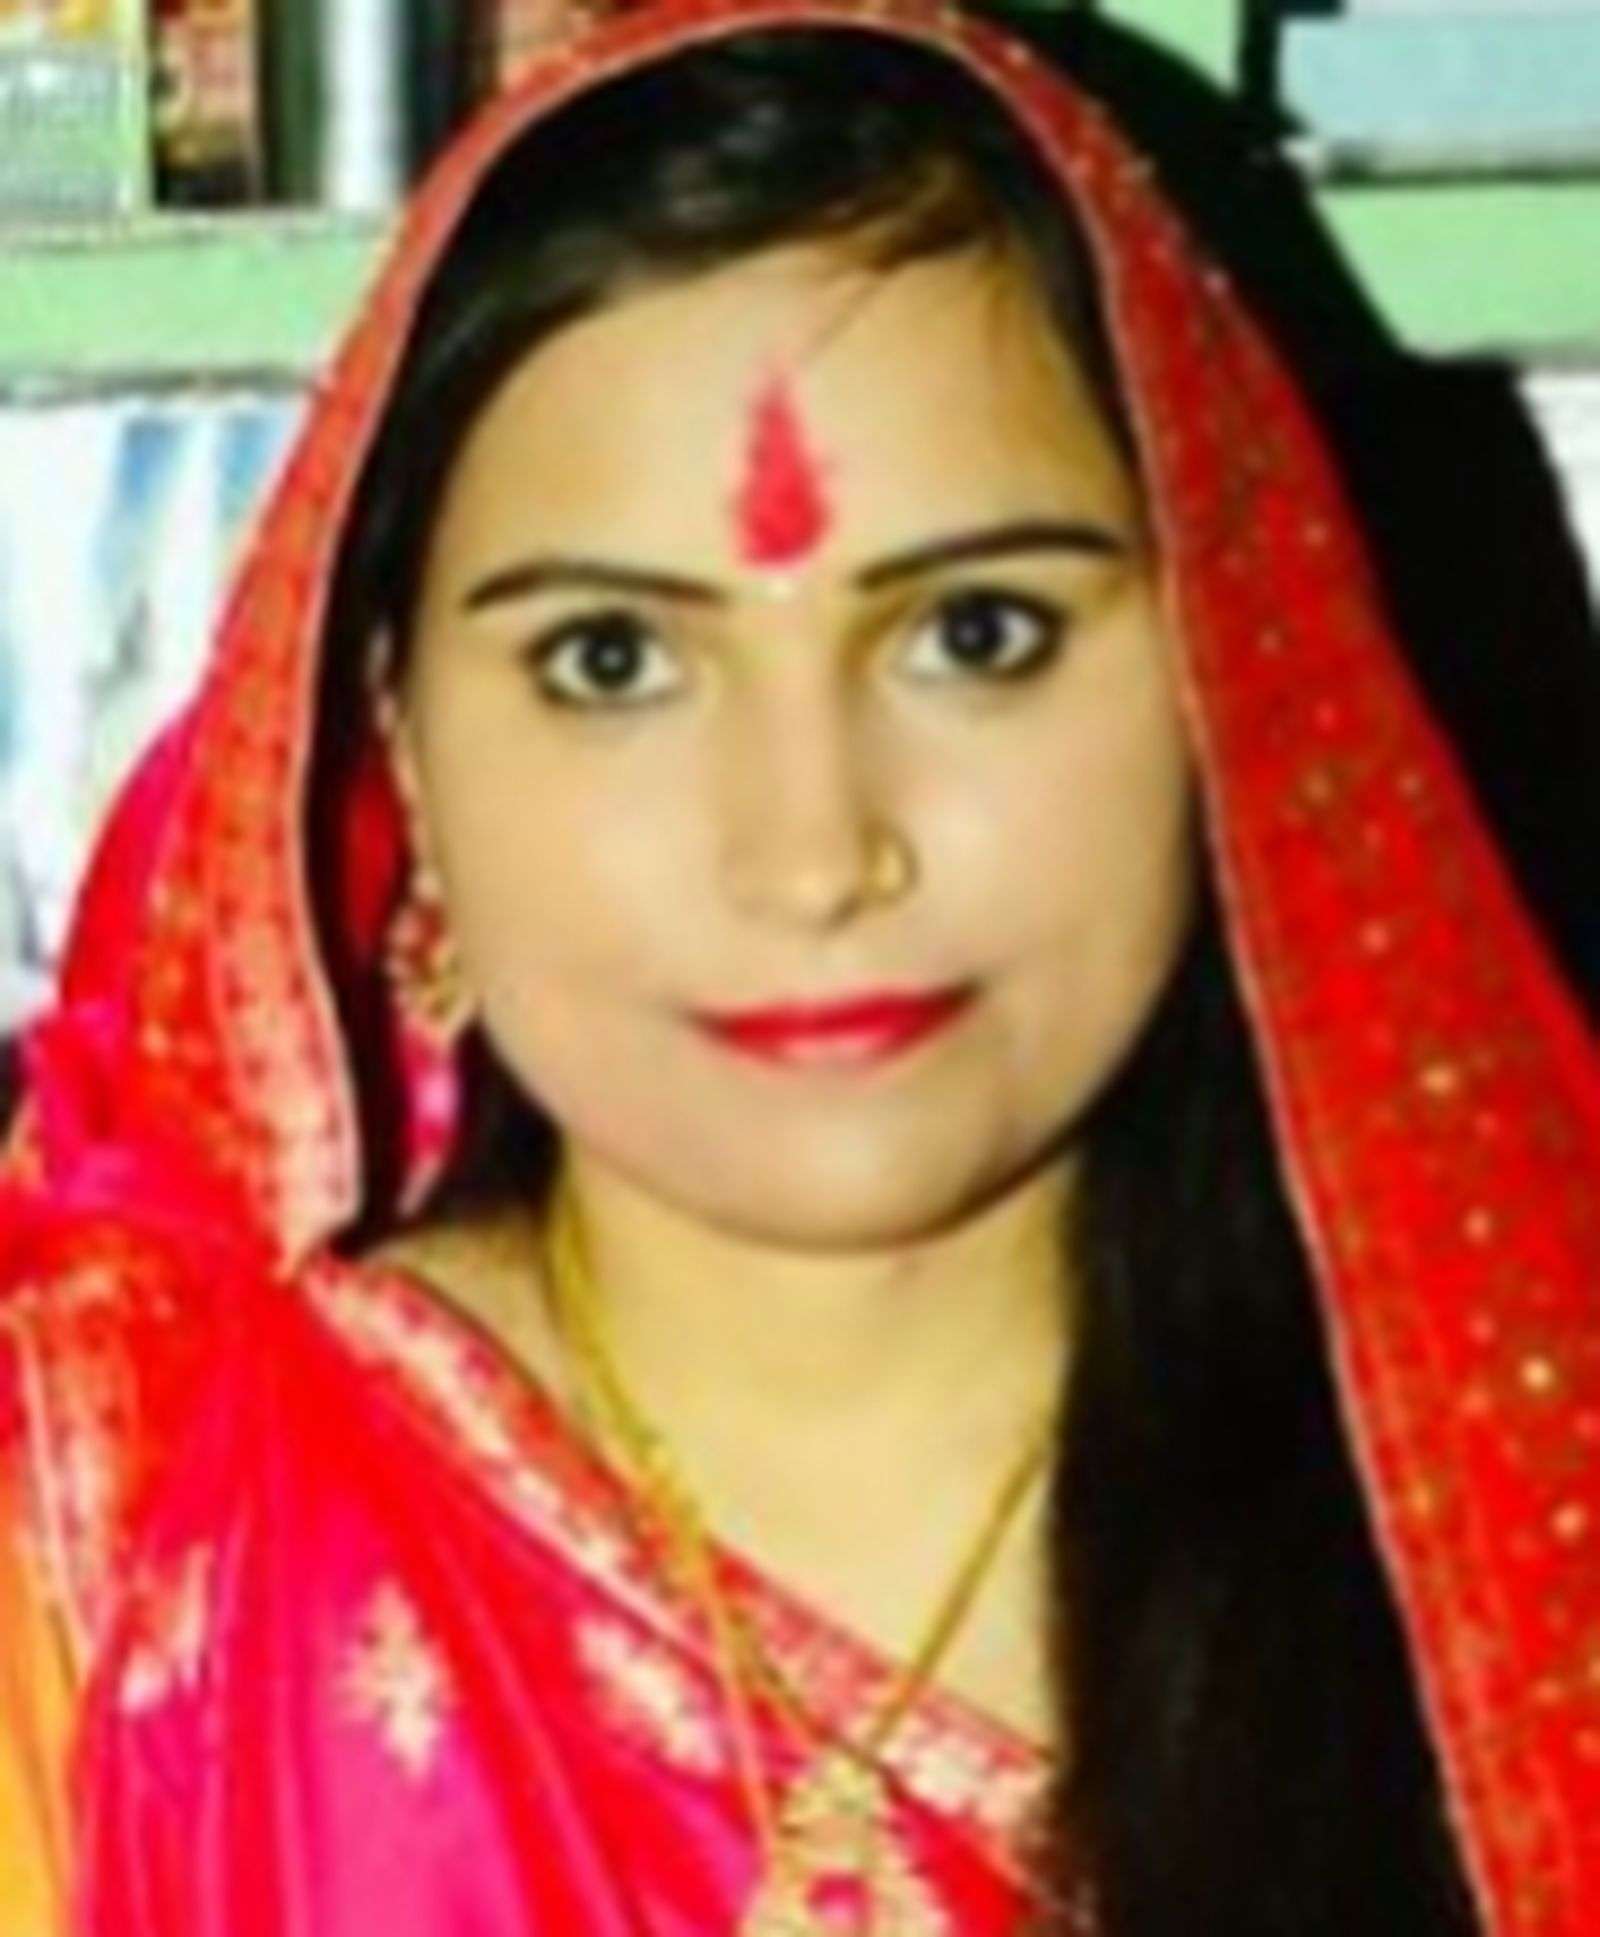 पति की मौत के बाद ससुरालजनों की प्रताडऩा से तंग 24 साल की विधवा ने की खुदकुशी